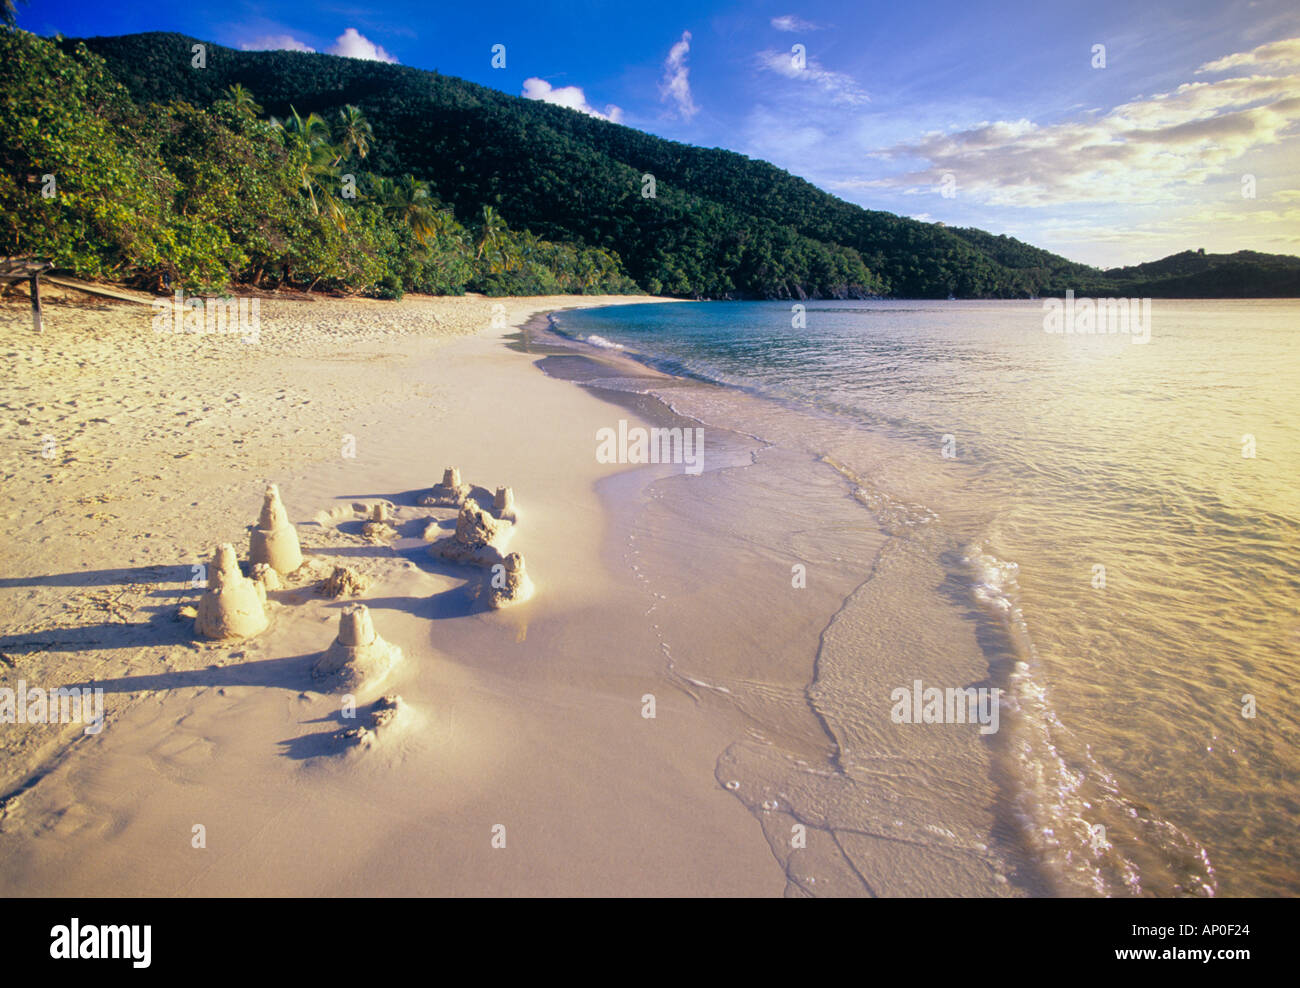 Un château de sable au bord de l'eau sur la plage de sable blanc de la baie de lignes comme la mer turquoise tours la rive St John US Virgin Islands Banque D'Images